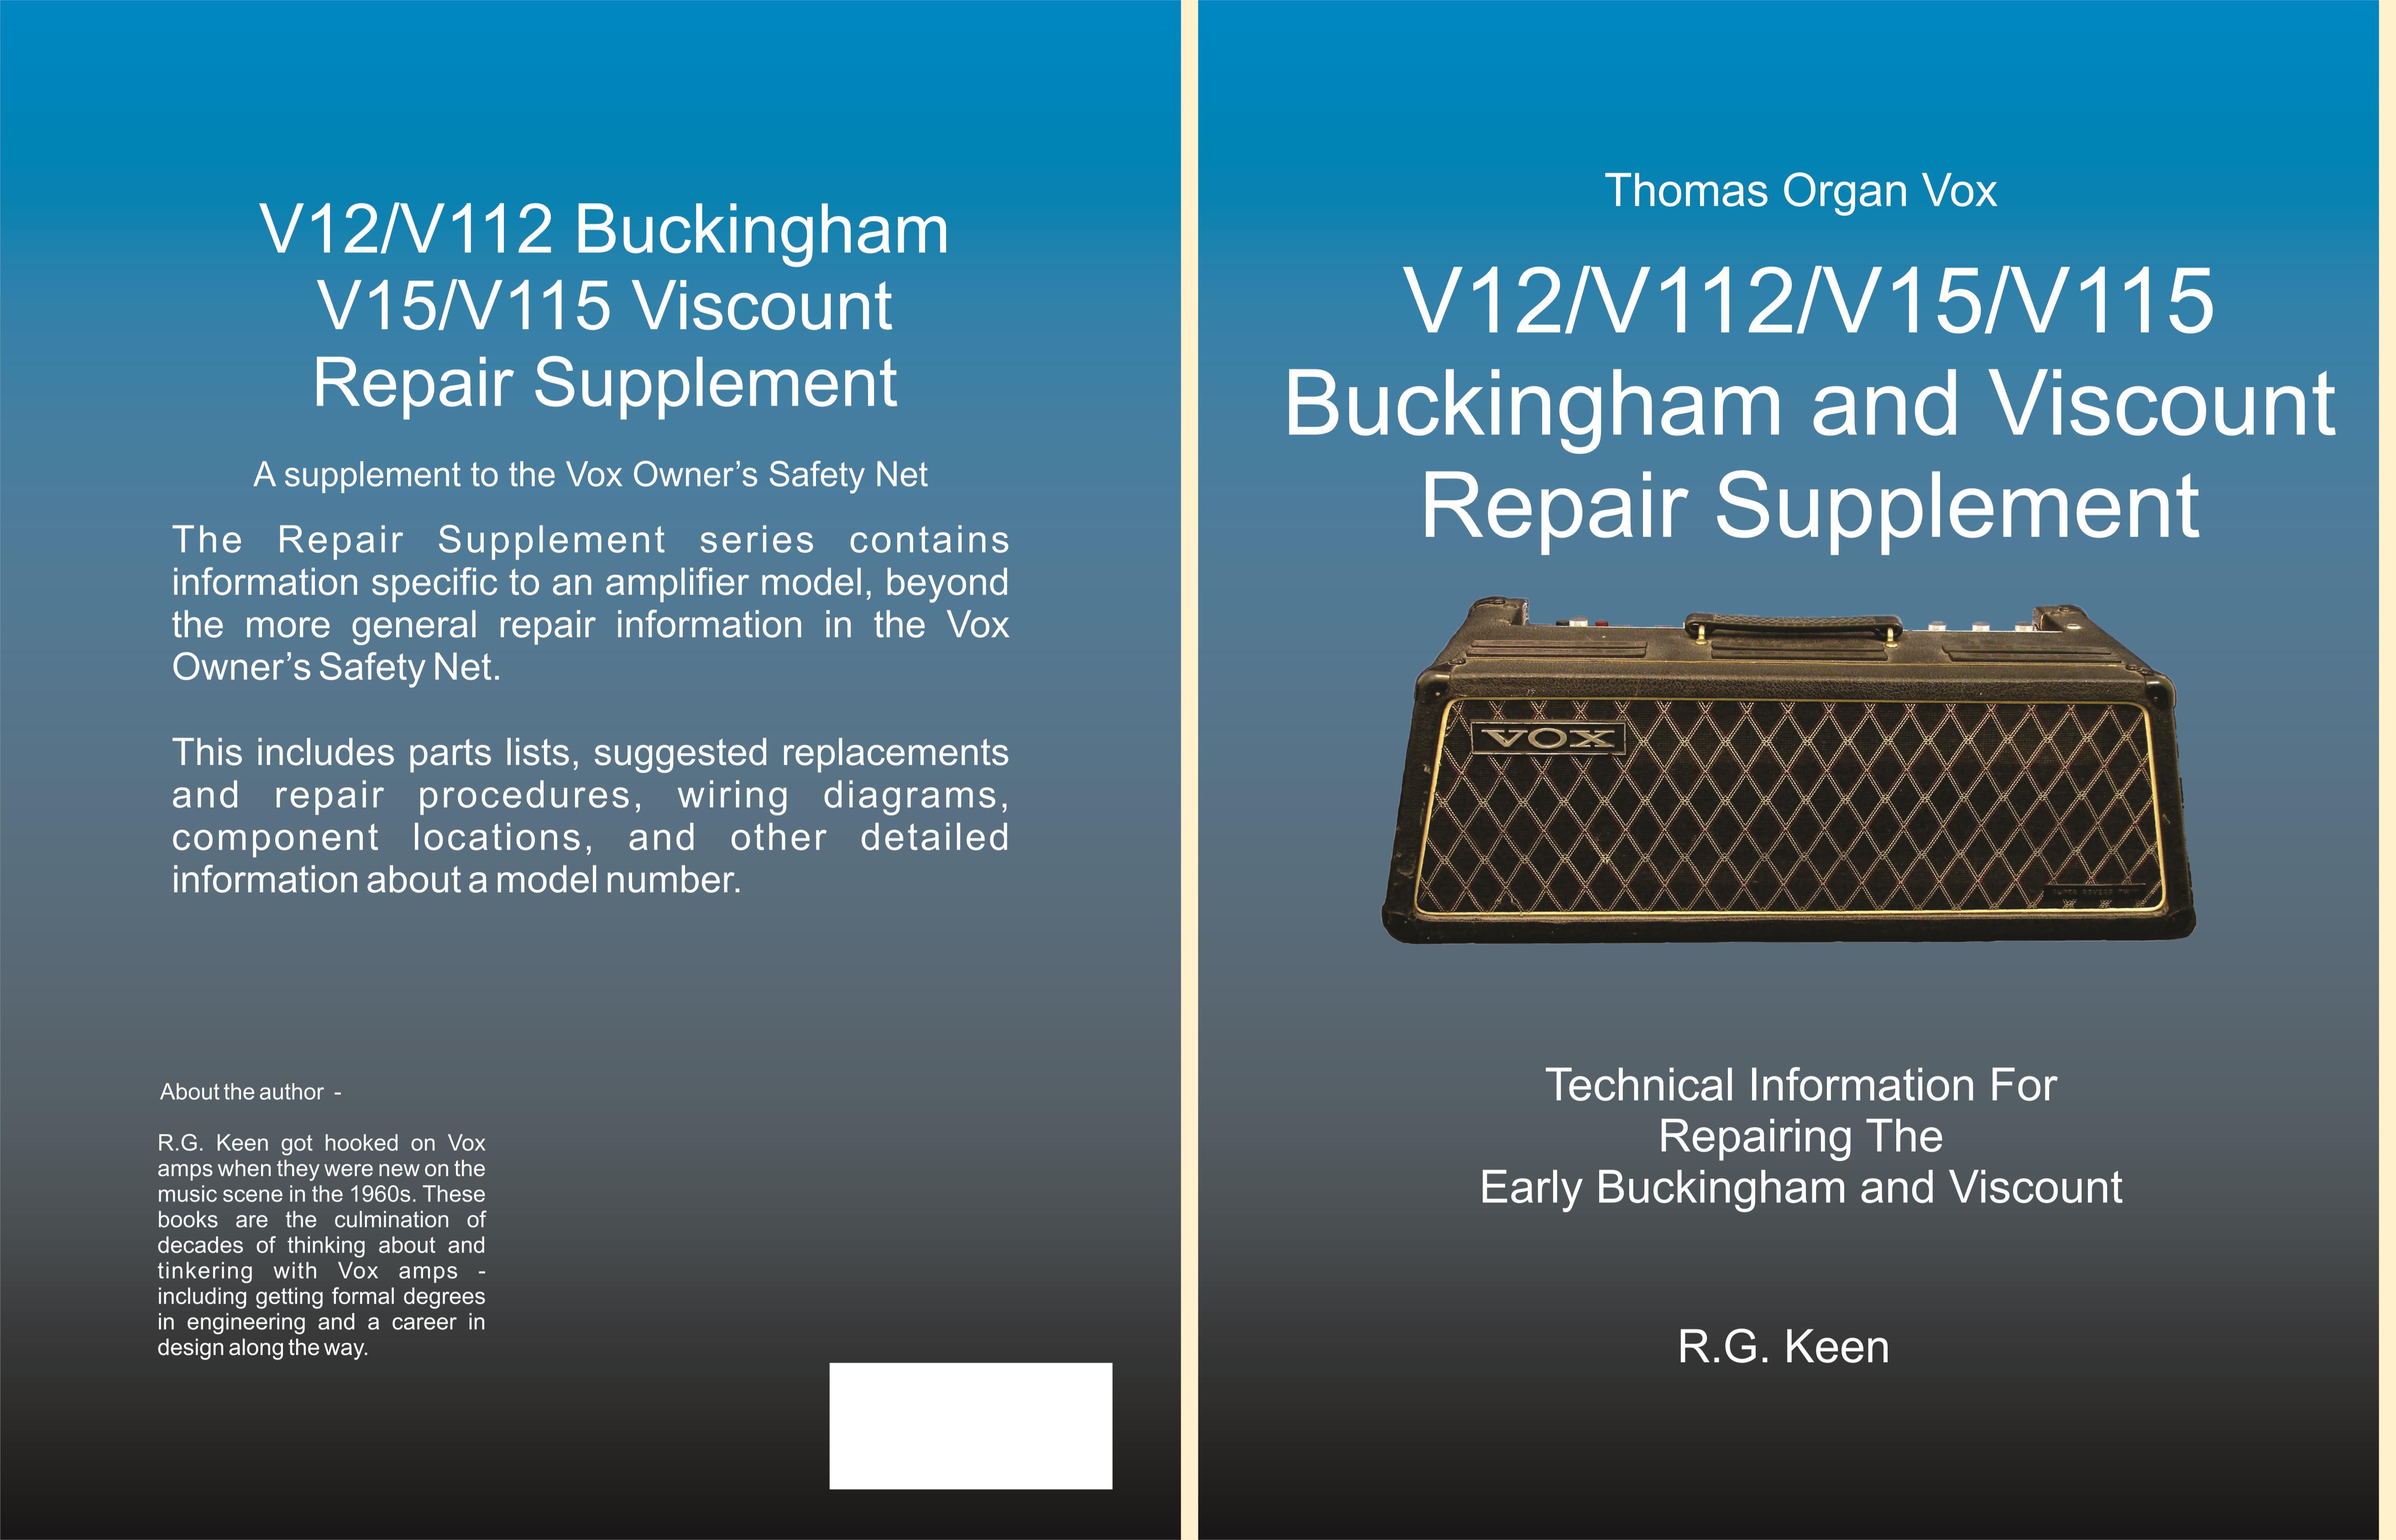 Buckingham/Viscount V12/V112/V15/V115 cover image